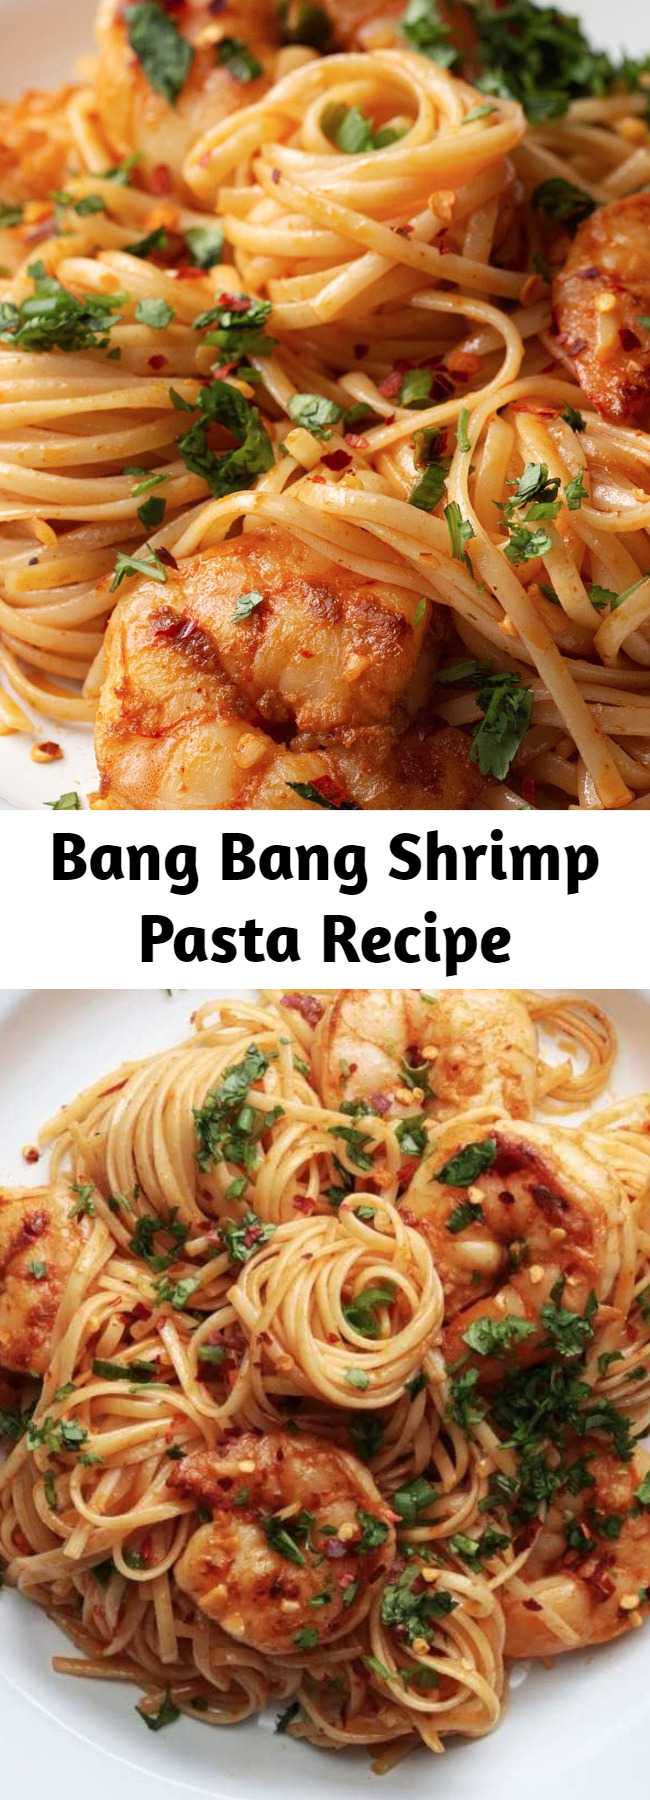 Bang Bang Shrimp Pasta Recipe - Why "Bang Bang?" Because this shrimp pasta is bangin'!